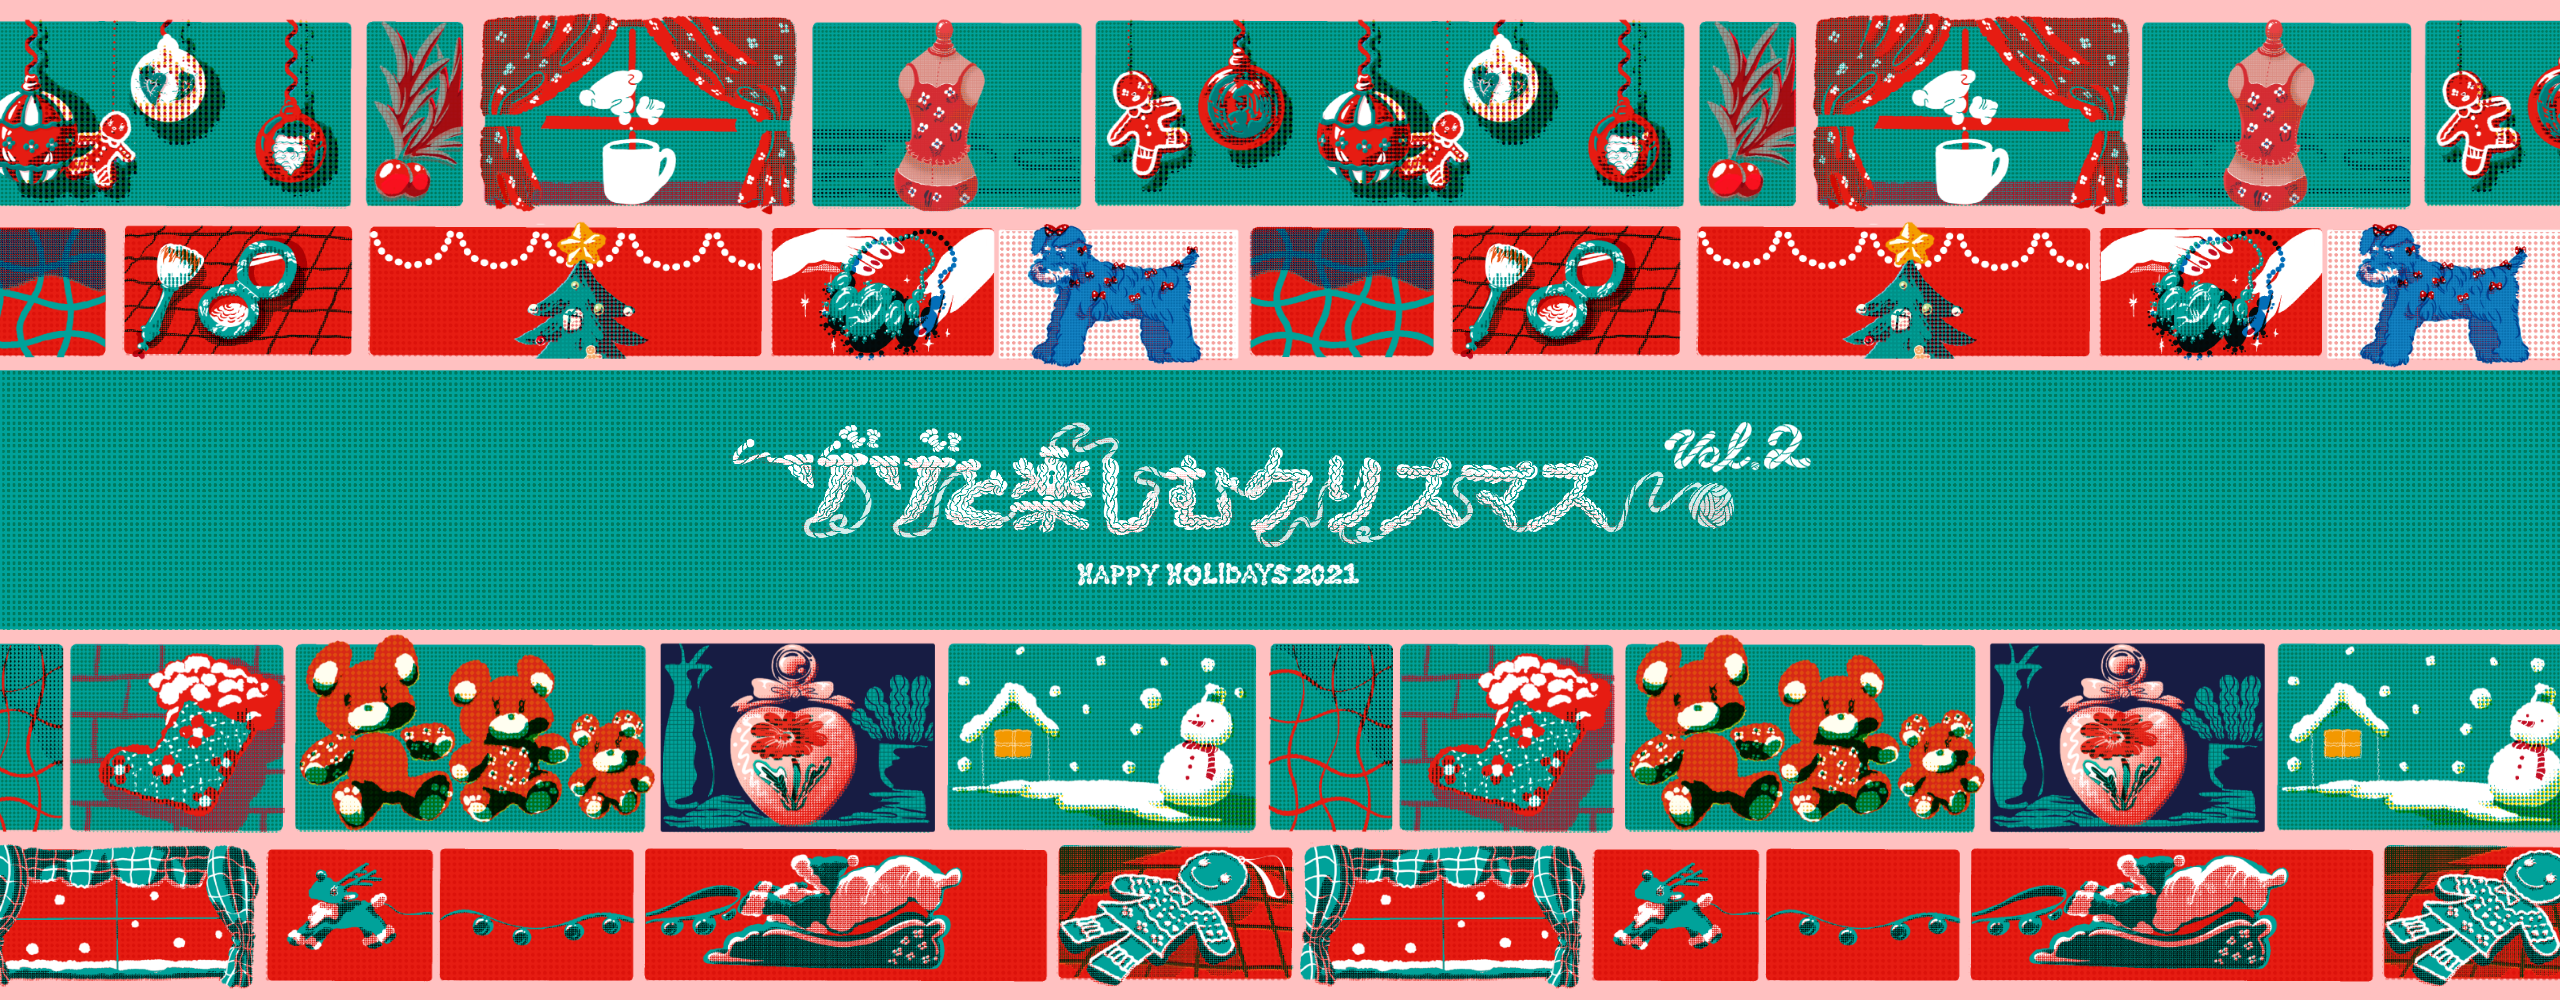 ゾゾと楽しむクリスマス HAPPY HOLIDAYS 2021 vol.2